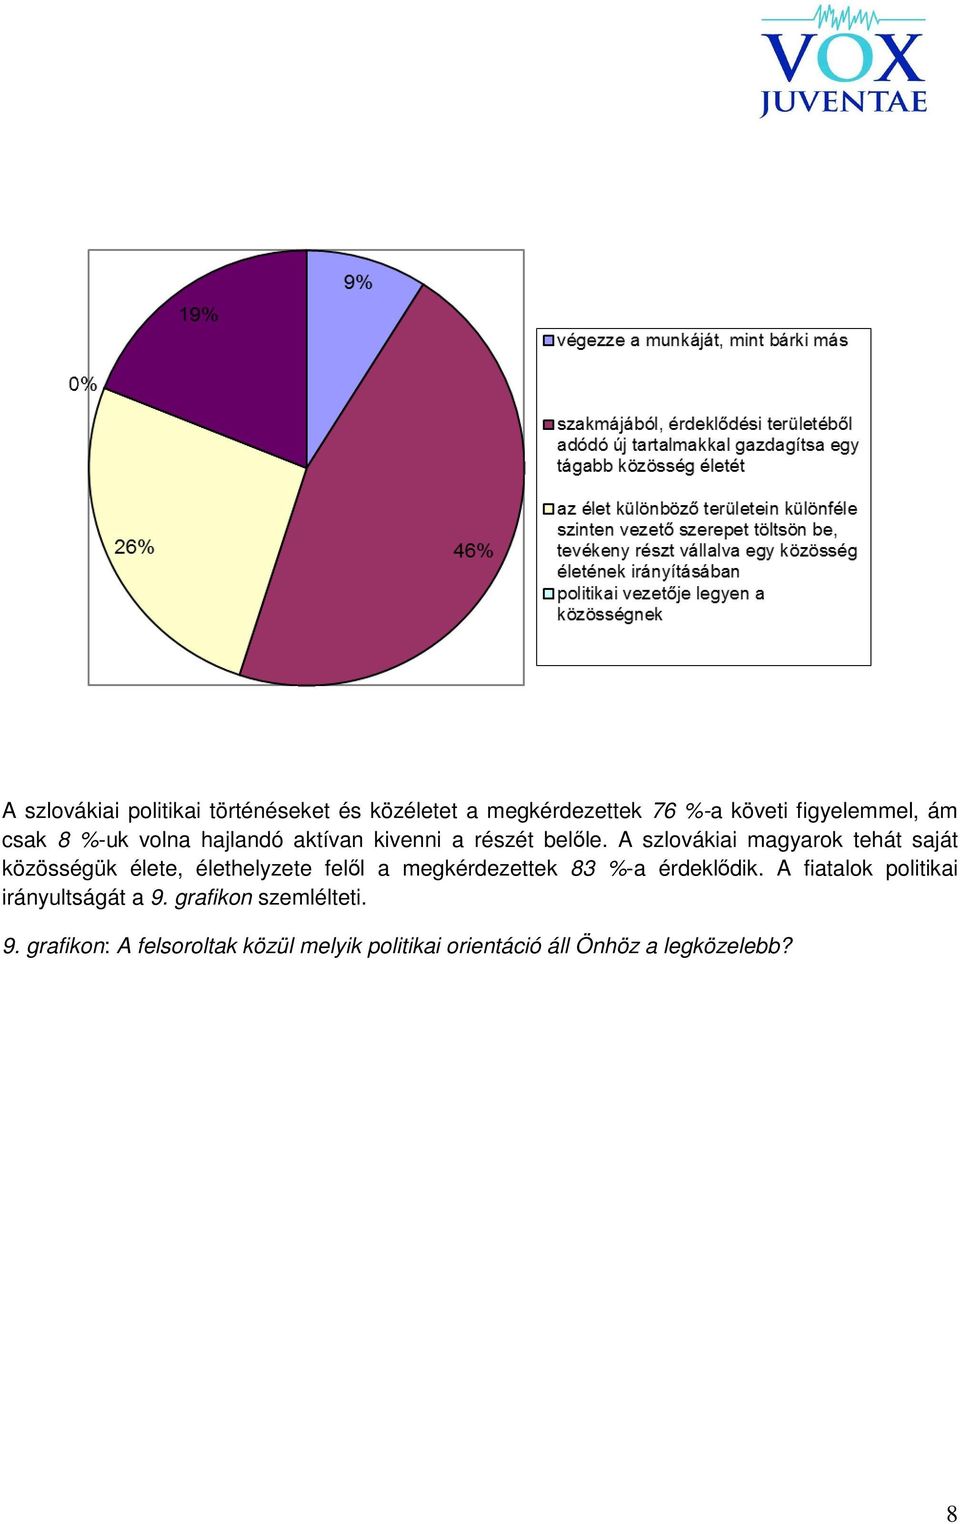 A szlovákiai magyarok tehát saját közösségük élete, élethelyzete felől a megkérdezettek 83 %-a